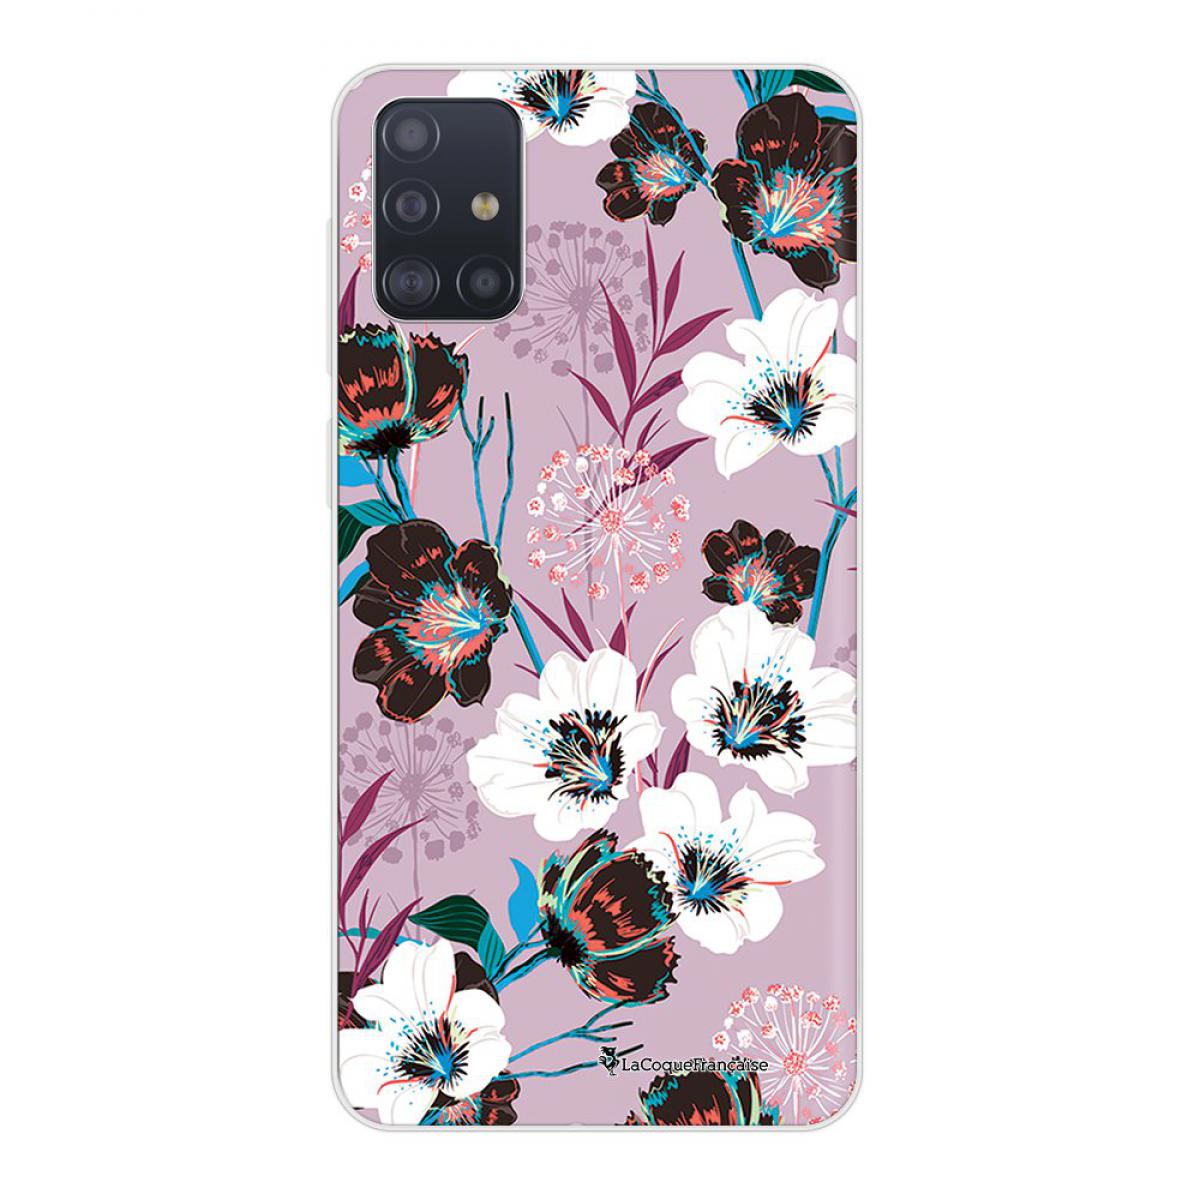 La Coque Francaise - Coque Samsung Galaxy A51 5G souple transparente Fleurs parme Motif Ecriture Tendance La Coque Francaise - Coque, étui smartphone